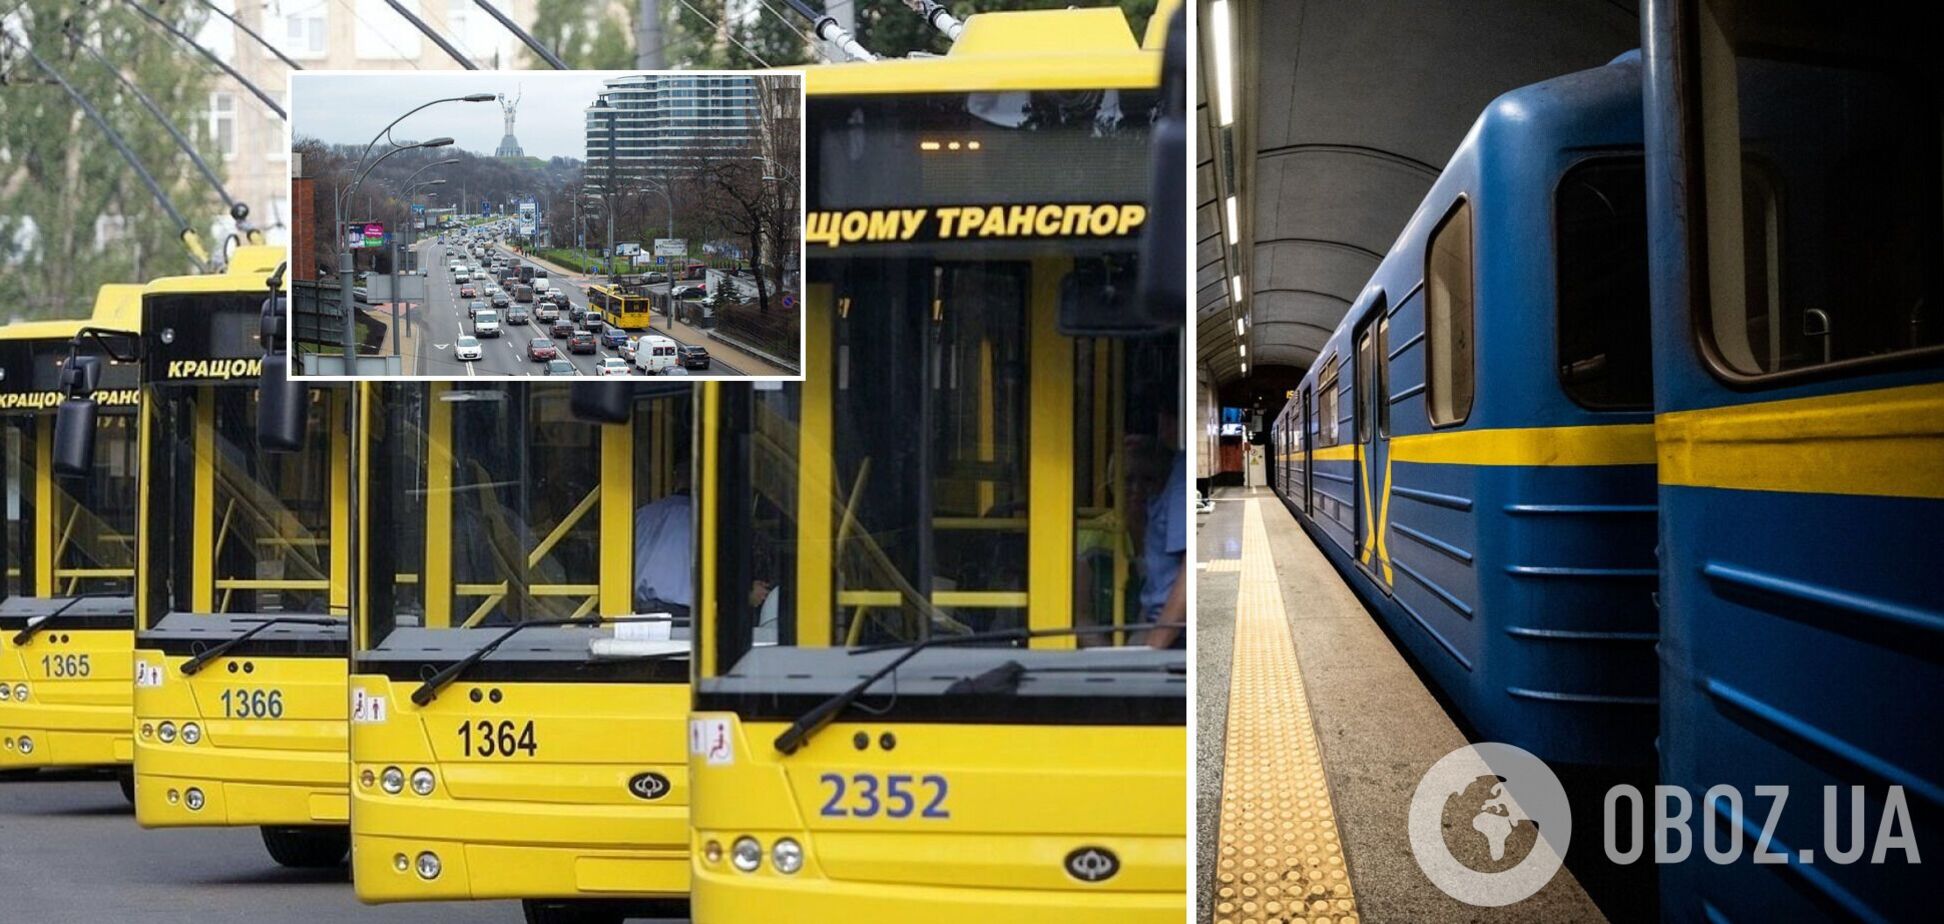 Громадський транспорт в Києві повернеться до звичного режиму роботи: в КМДА оприлюднили графік  